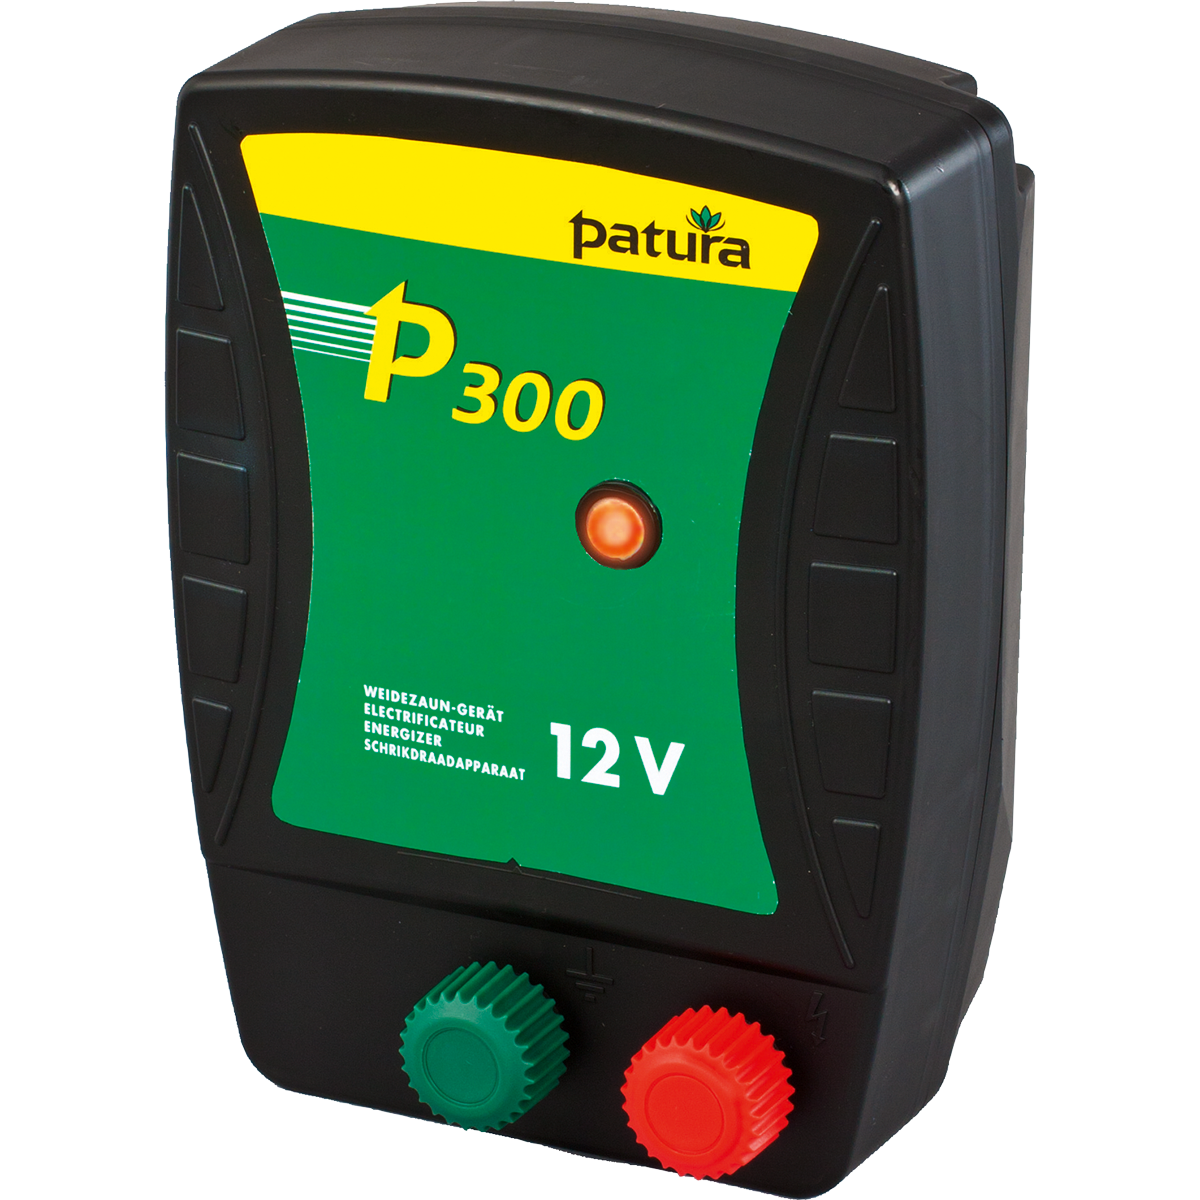 Patura p300, schrikdraadapparaat voor 12 v batterij met draagbox